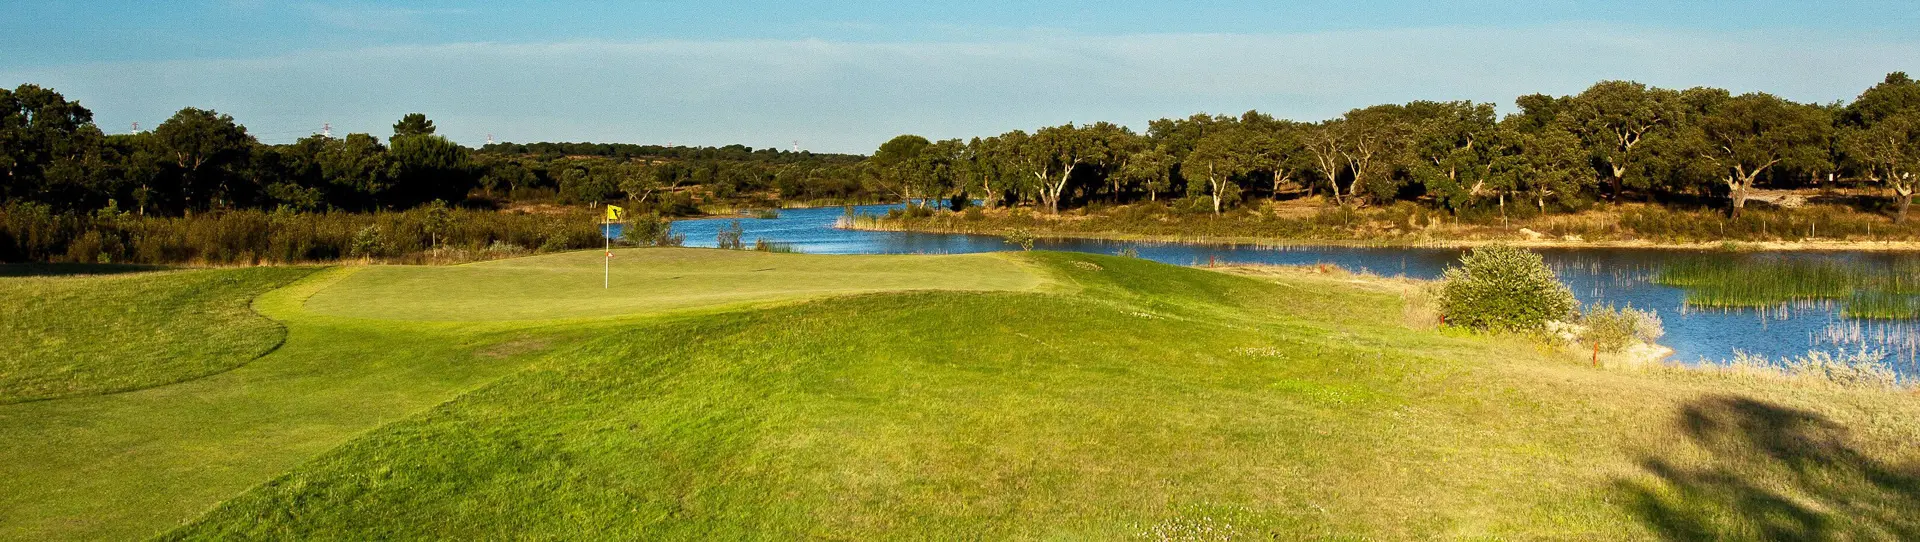 Portugal golf courses - Santo Estêvão - Photo 2